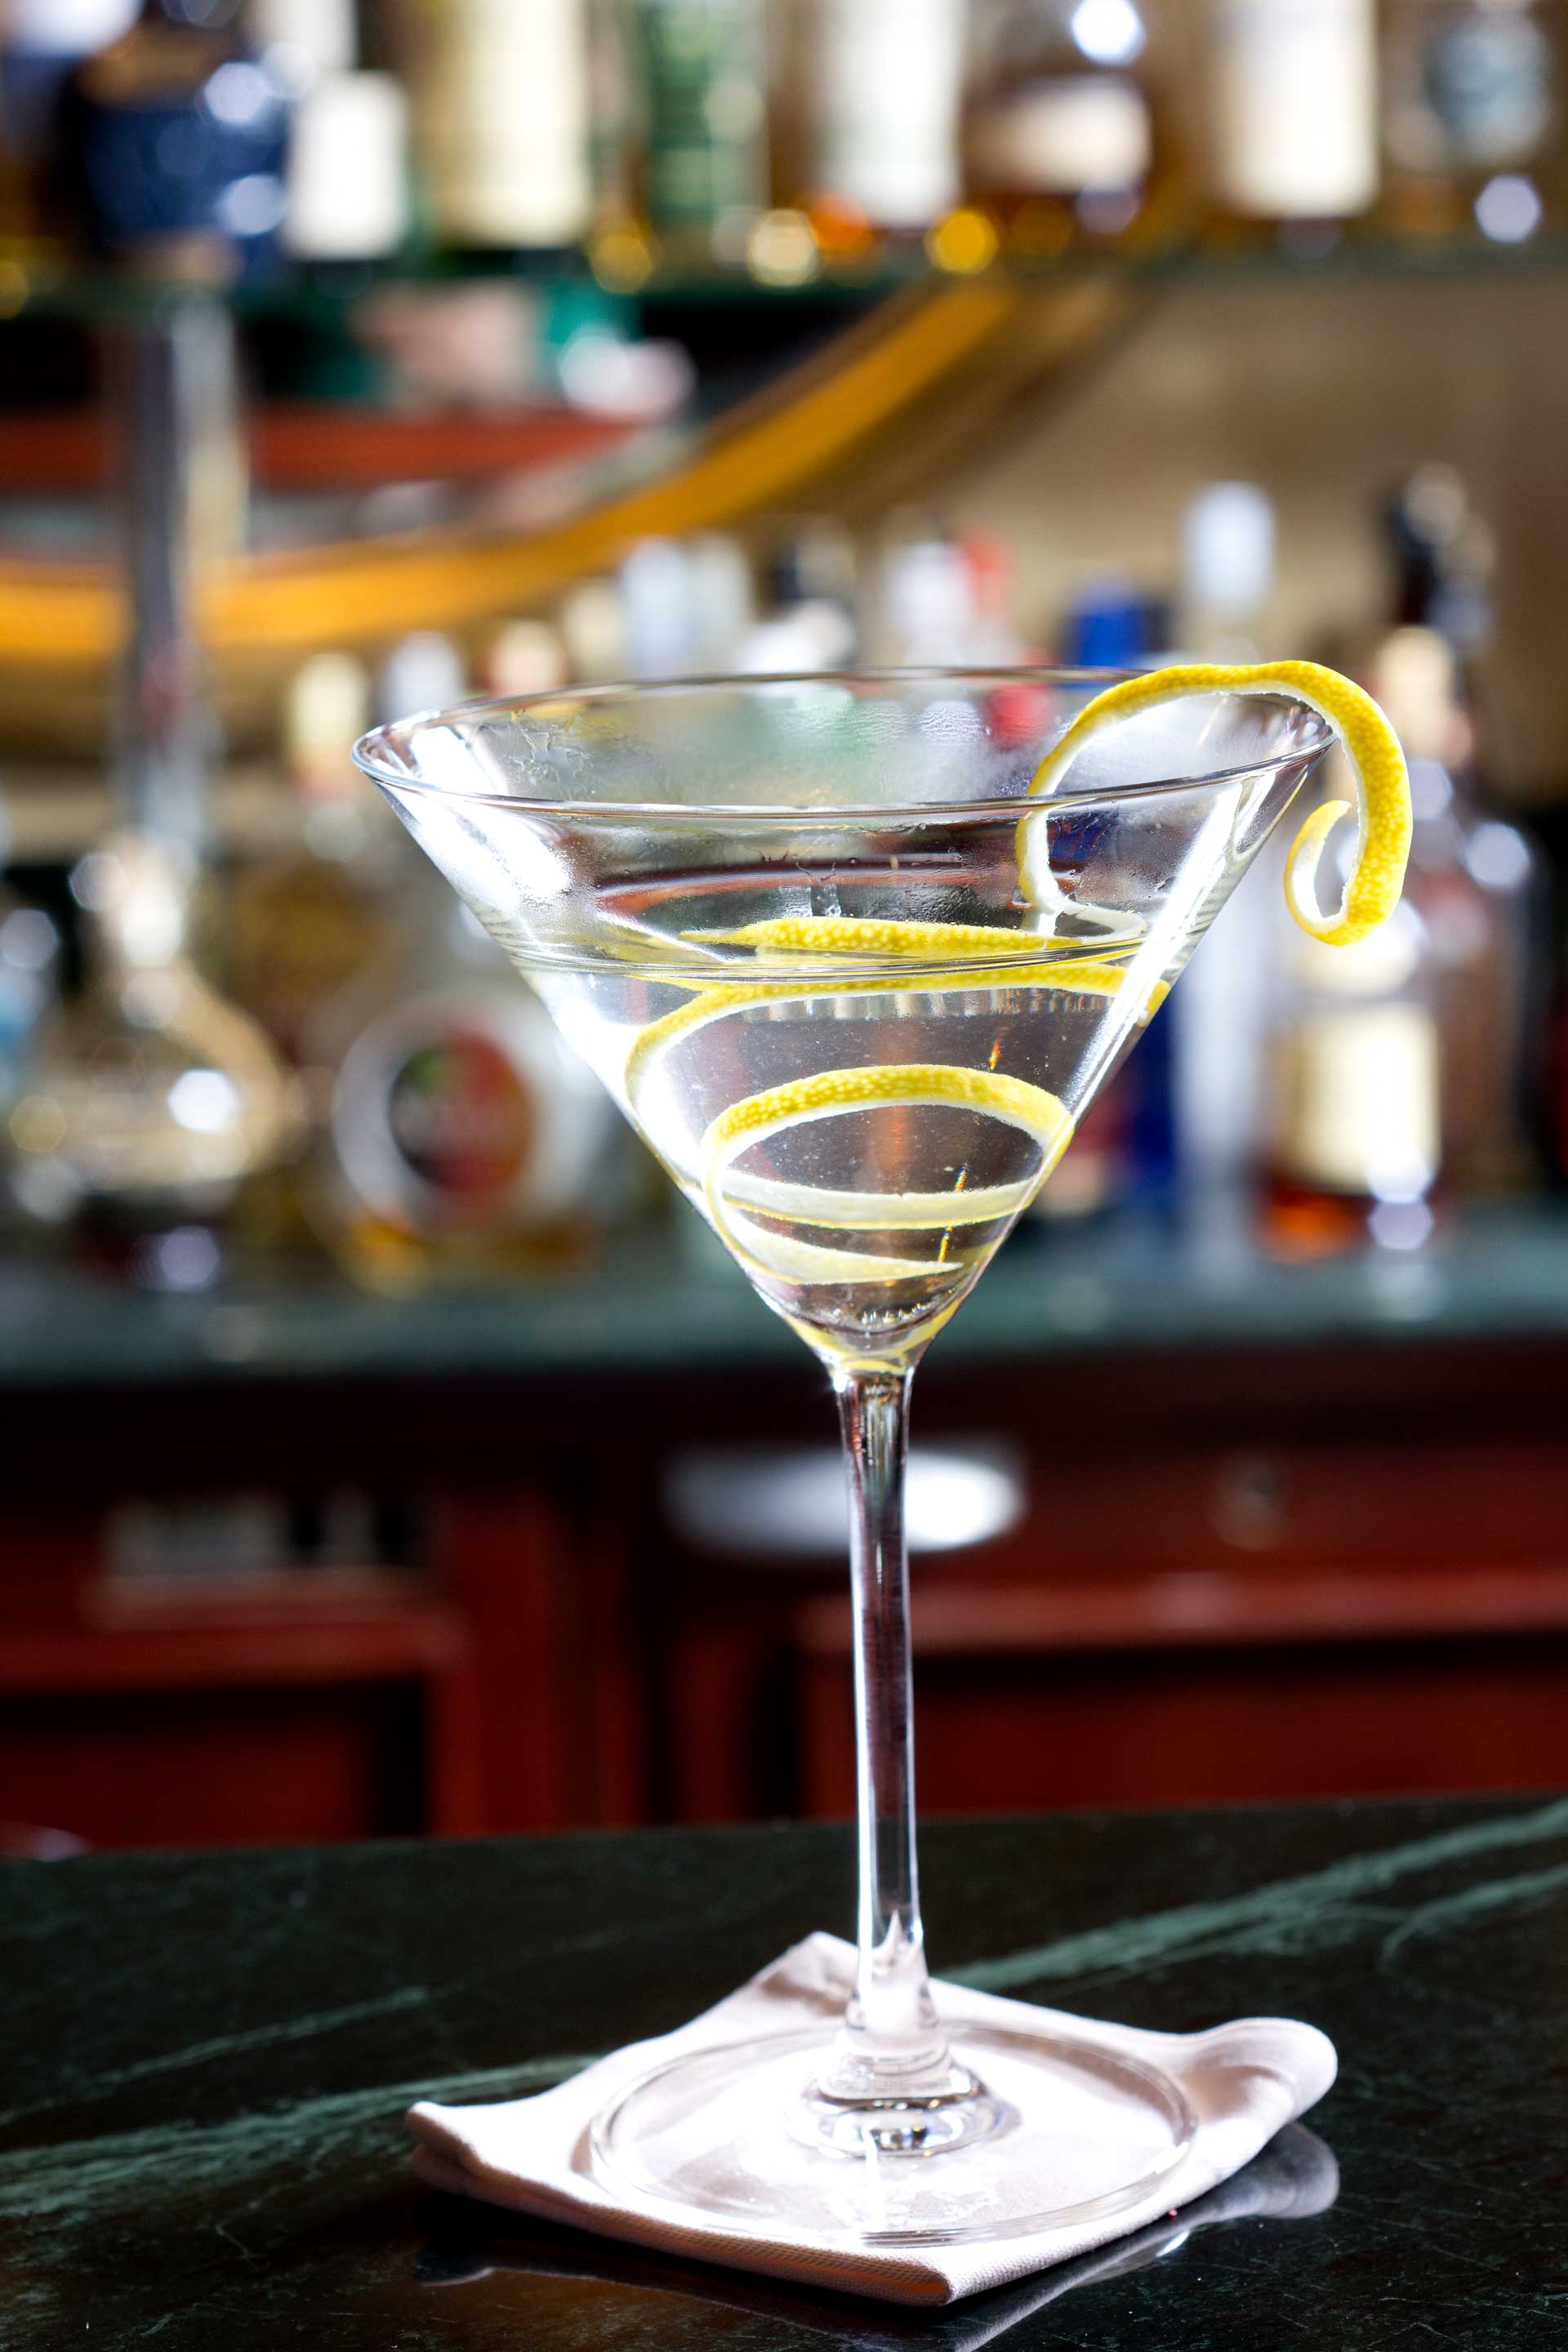 A lemon martini cocktail on a bar